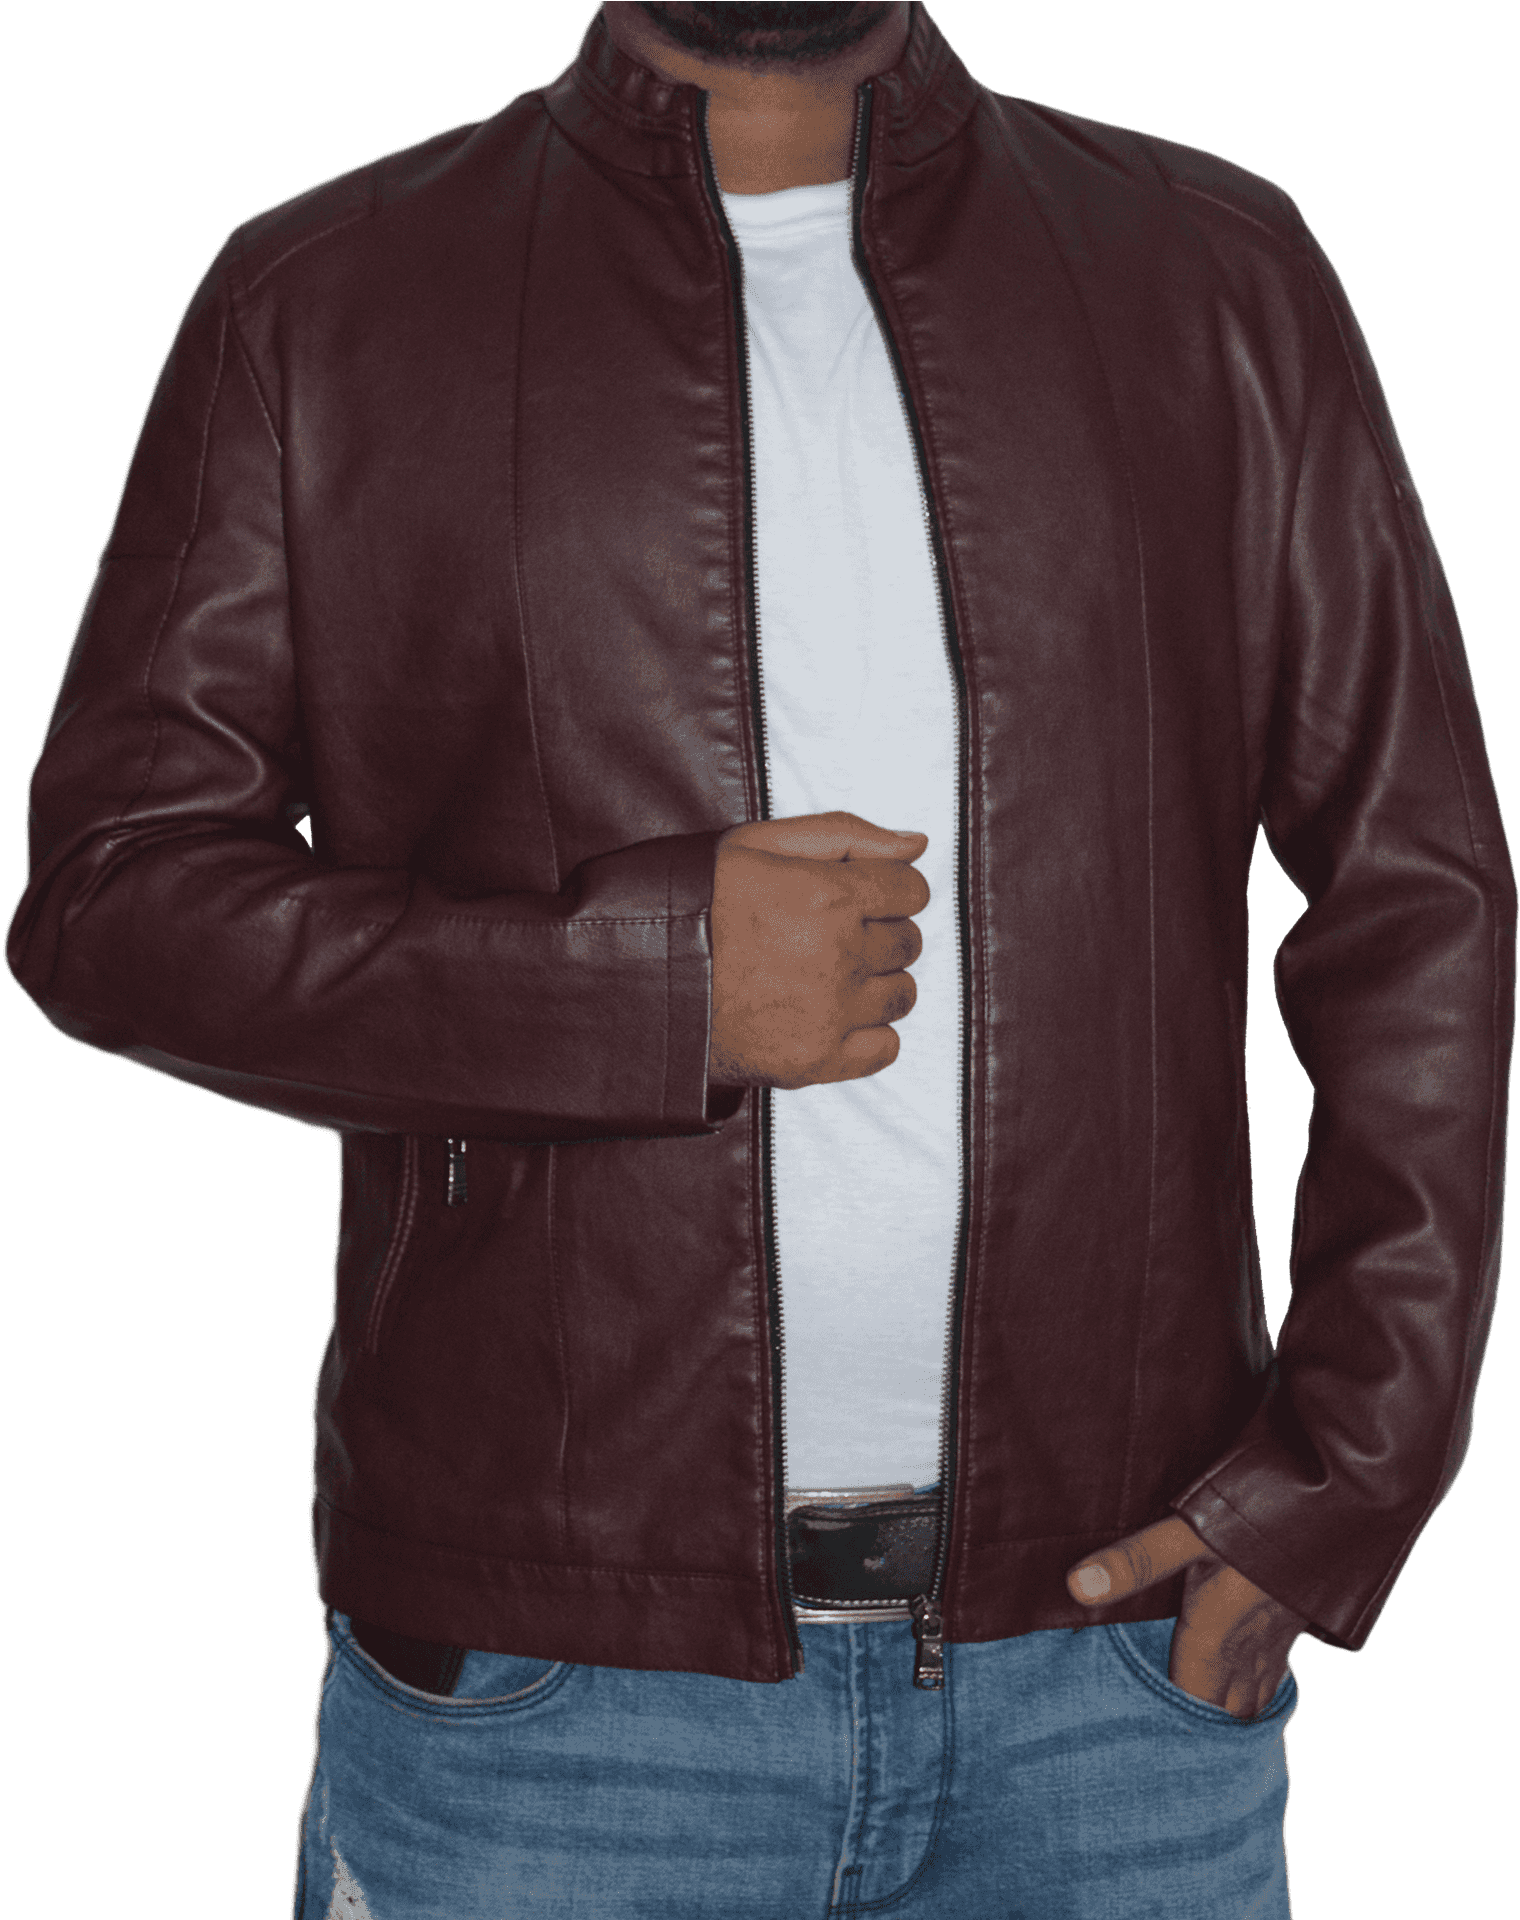 Download Burgundy Leather Jacket Men | Wallpapers.com